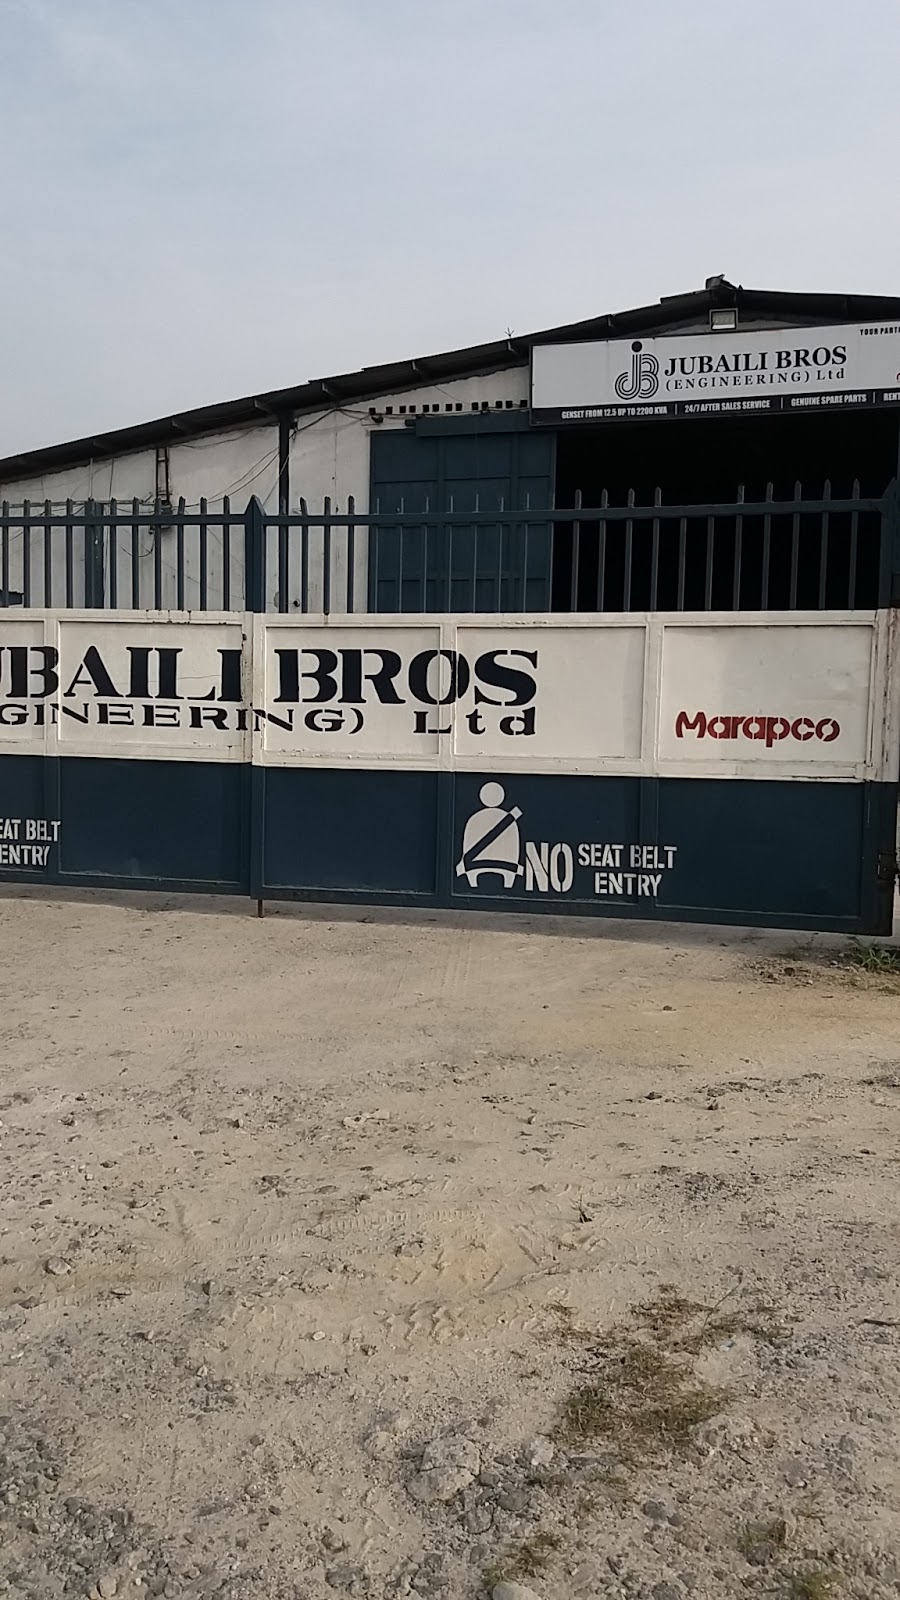 Jubaili Bros Engineering Ltd